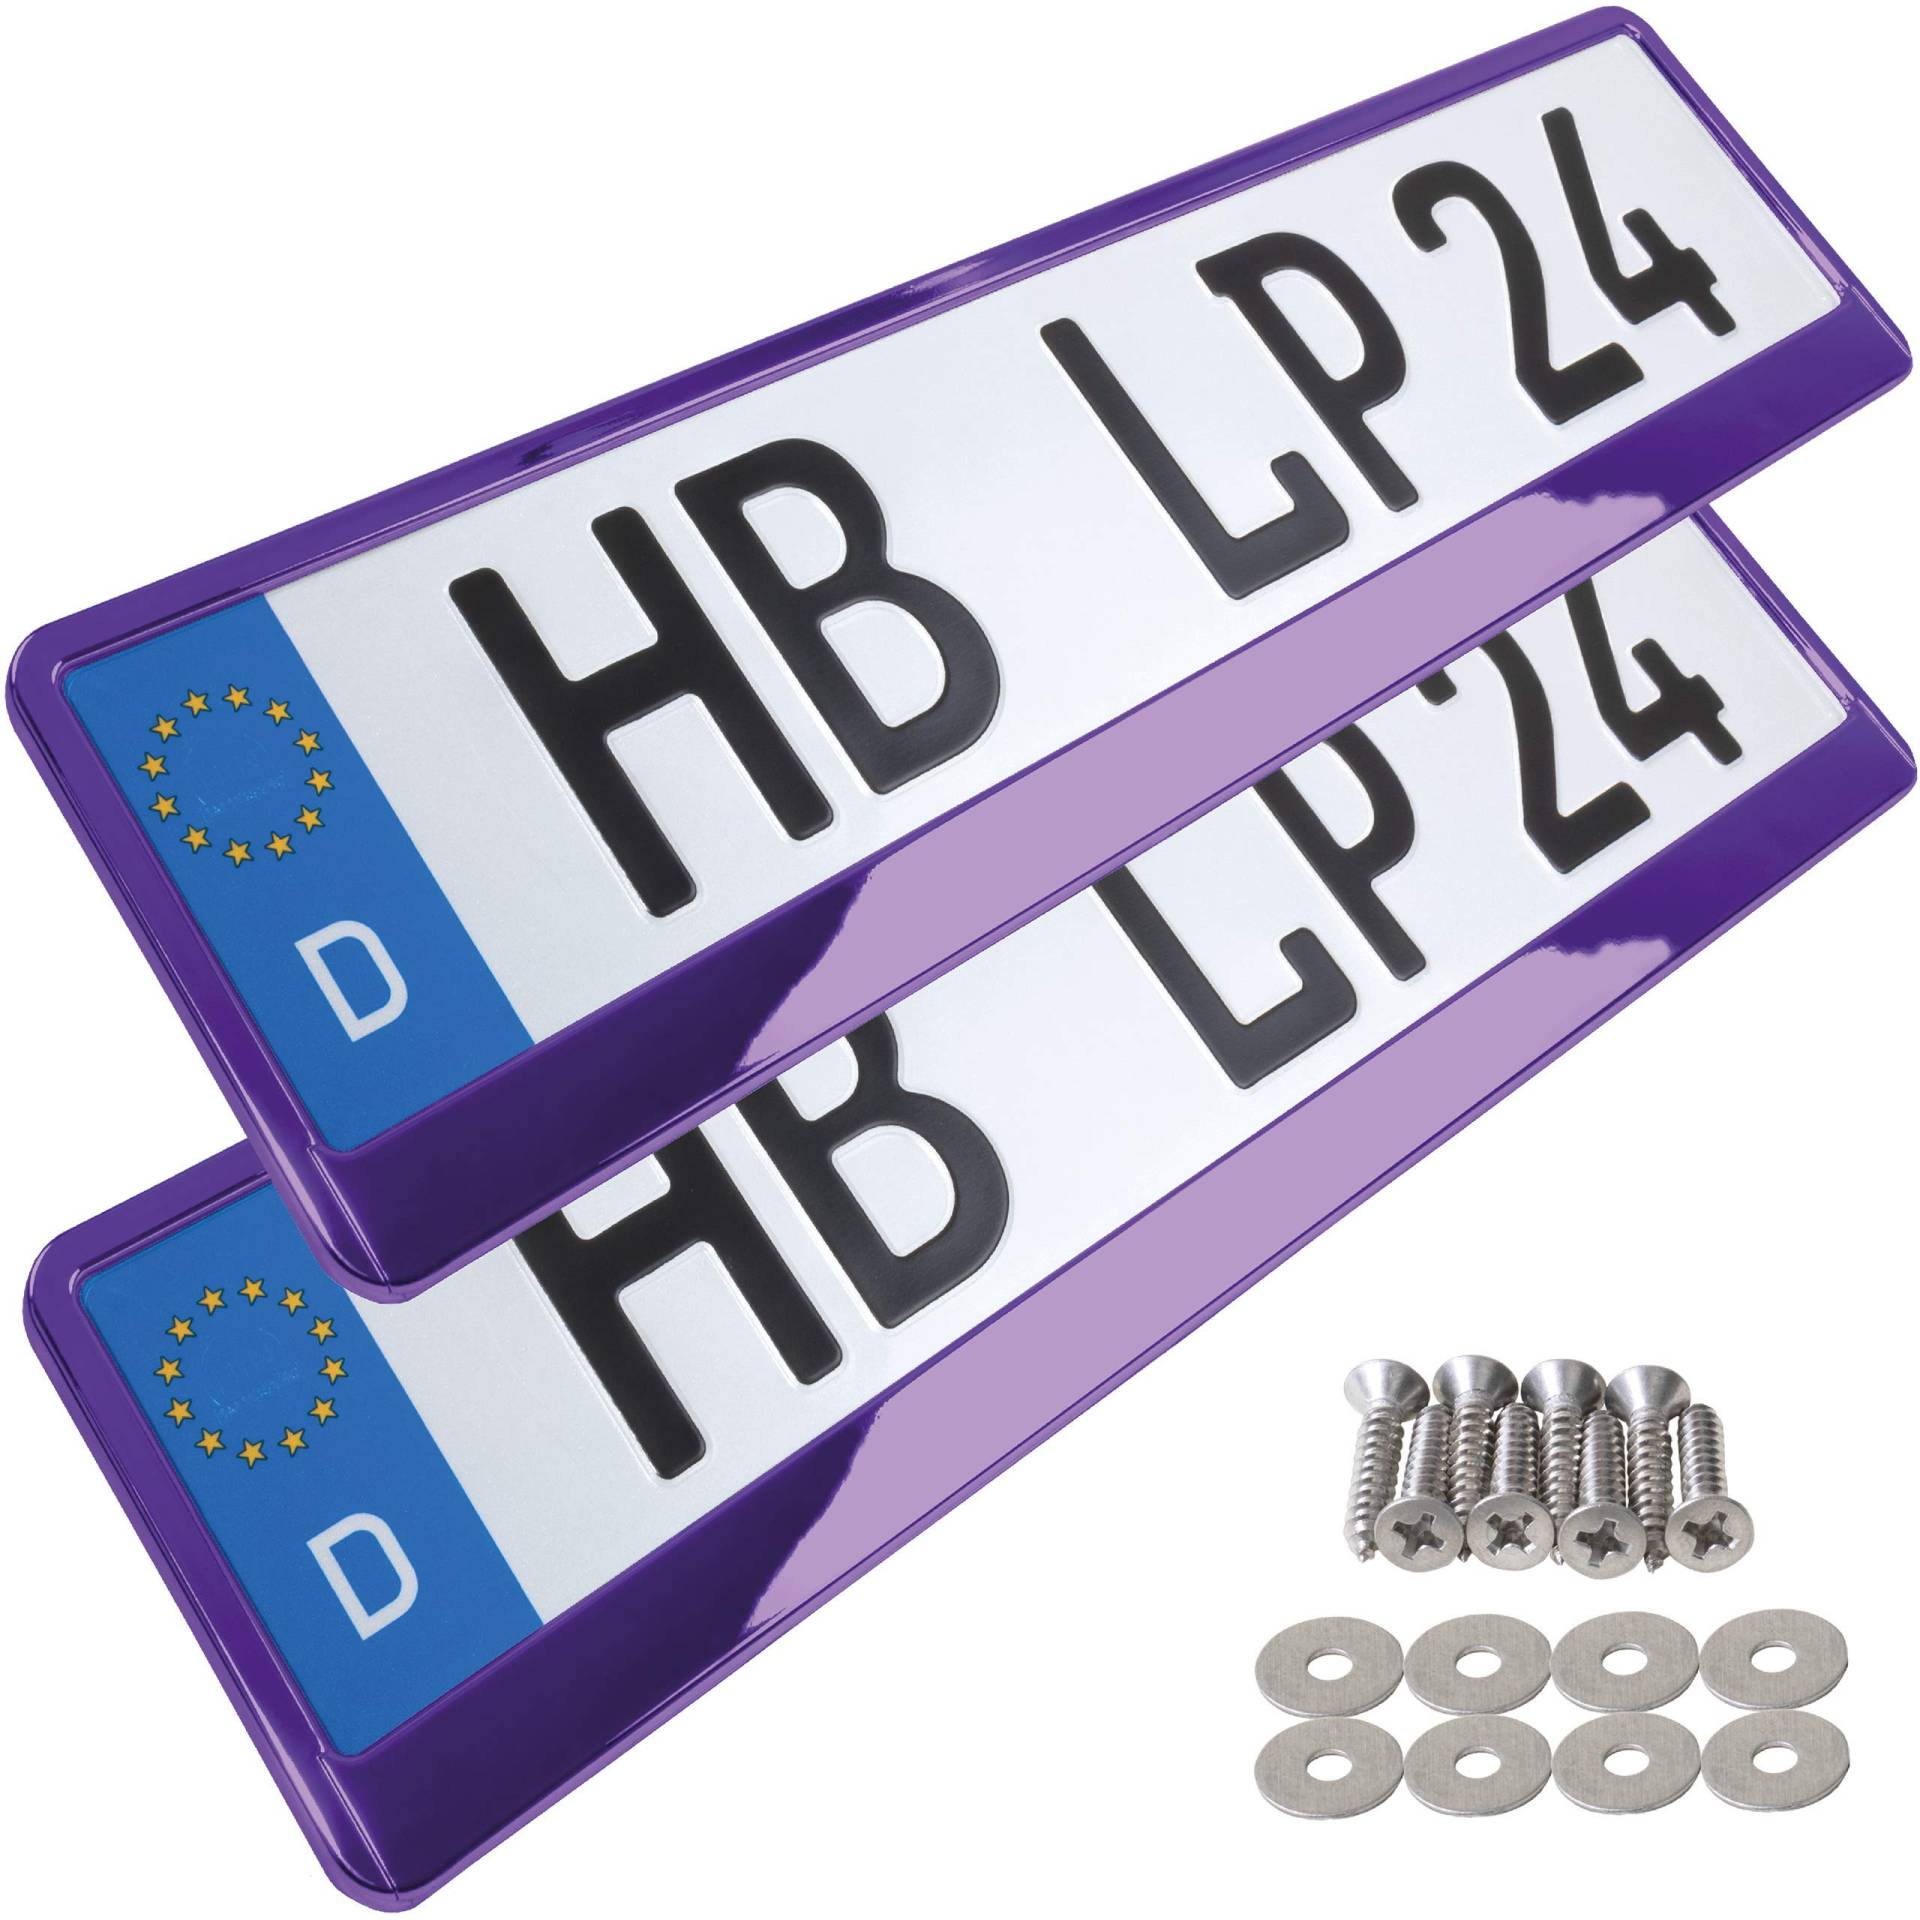 A154 Kennzeichenhalter 2 Stück Auto Nummernschildhalter violett chrom Kennzeichenverstärker Kennzeichenhalterung Nummernschildhalterung Verstärker Halter für Kennzeichen Nummernschild edel glänzend von L & P Car Design